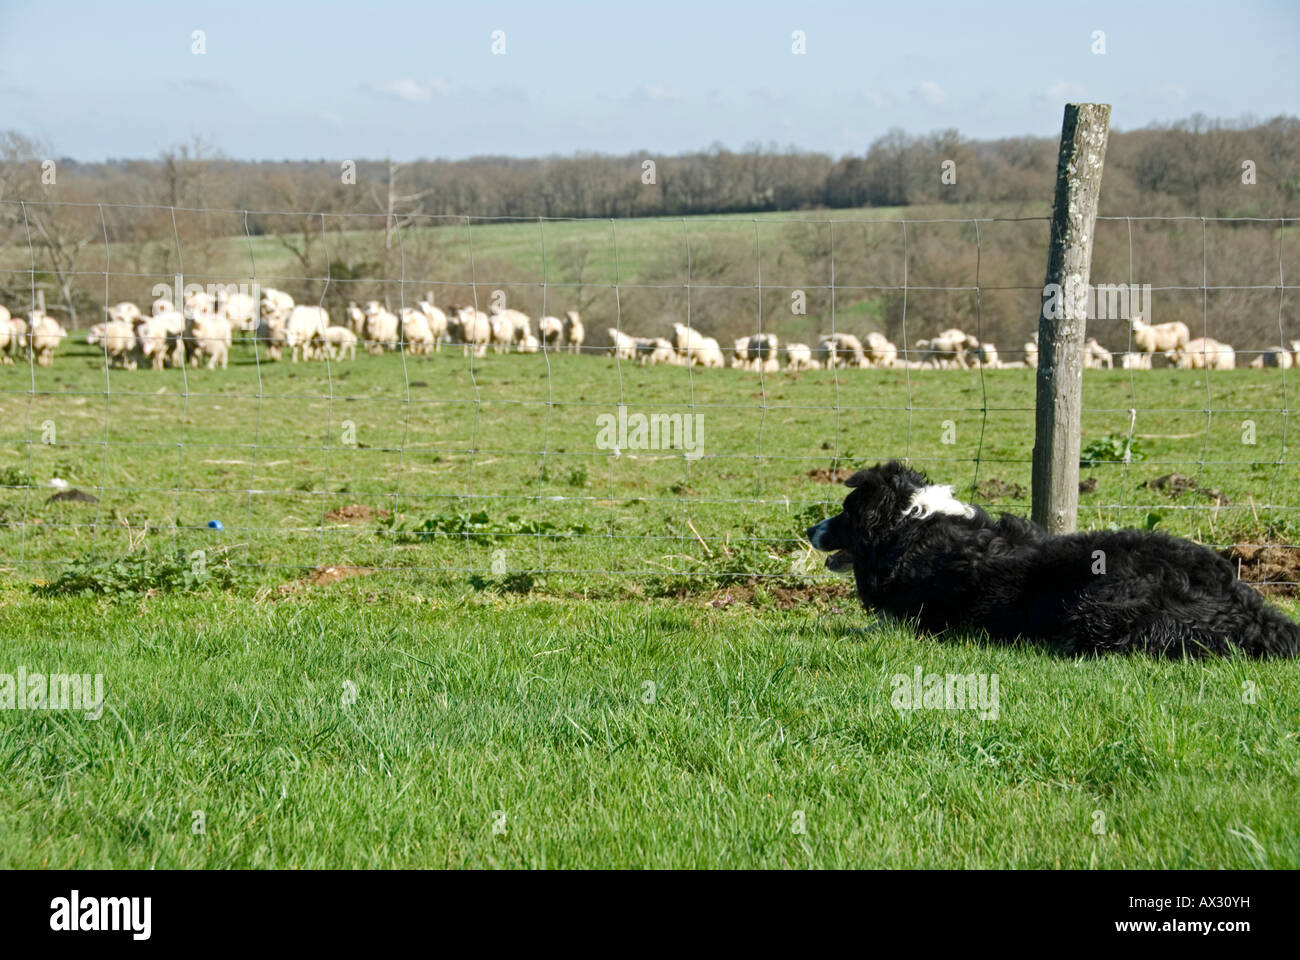 Stock Foto von einem schwarzen und weißen Border-Collie Hund beobachten eine Herde Schafe wurde das Foto in der Region Limousin von Fran Stockfoto